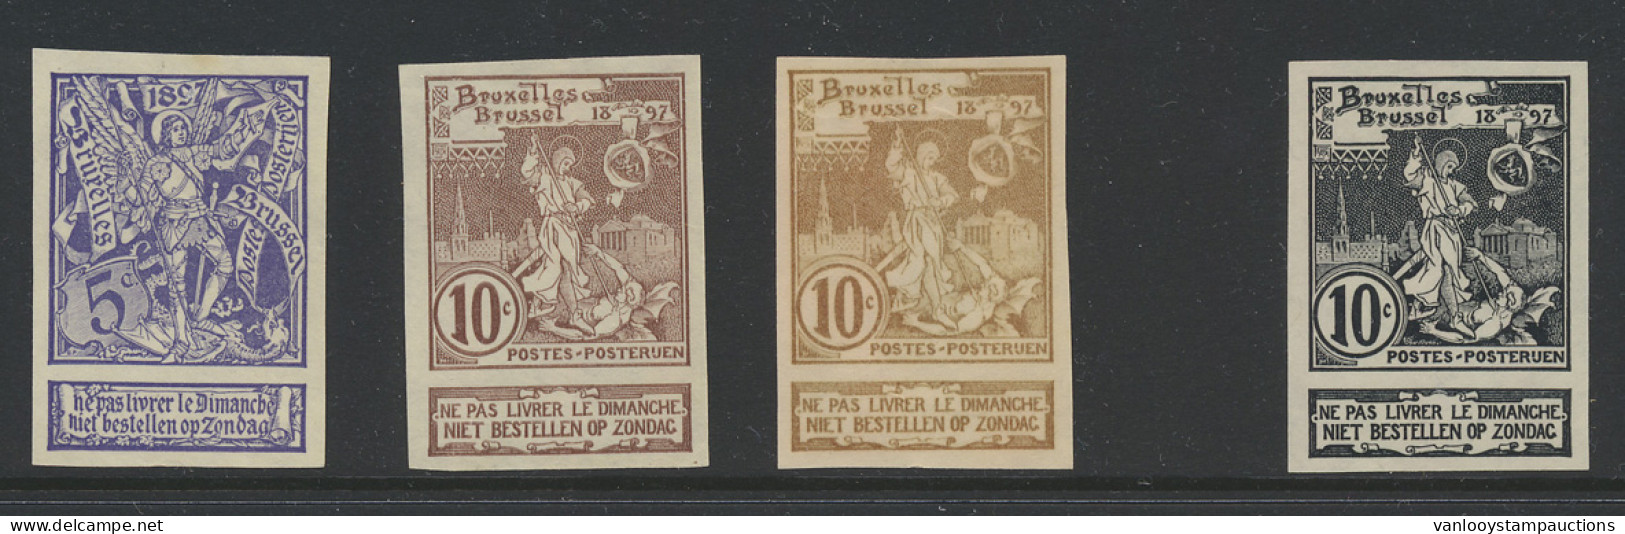 N° 71/73 Expo Brussel, De Serie Ongetand + Proefdruk 10c. In Het Zwart Op Dun Papier, Zm (OBP ++€60) - 1894-1896 Exhibitions